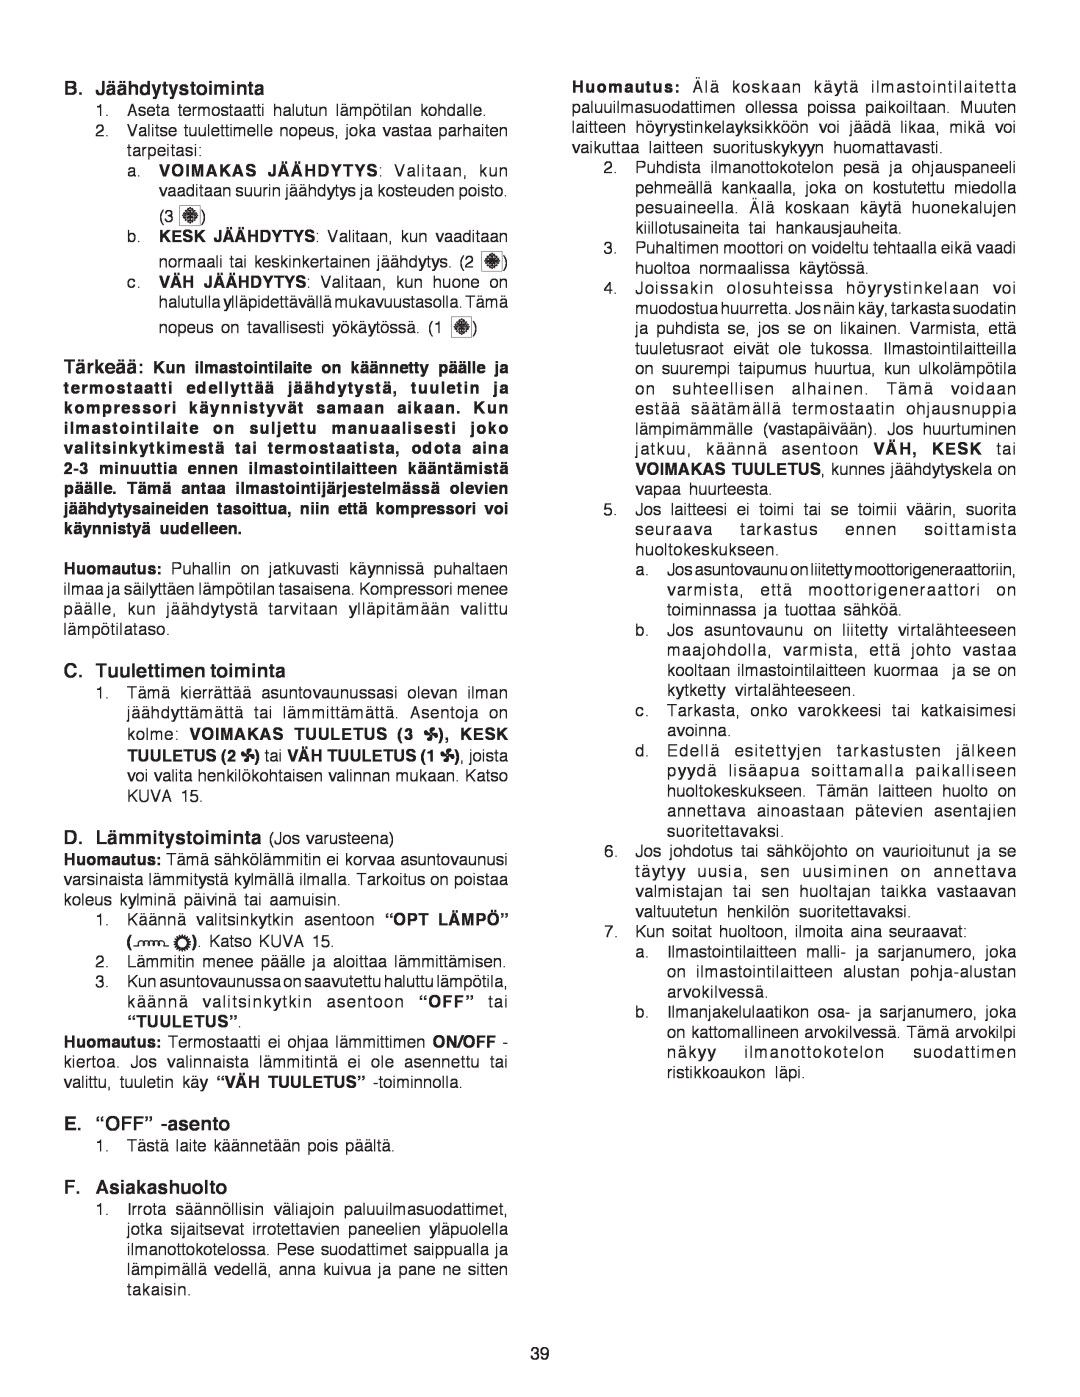 Dometic B3200 manual B.Jäähdytystoiminta, C.Tuulettimen toiminta, D.Lämmitystoiminta Jos varusteena, E.“OFF” -asento 